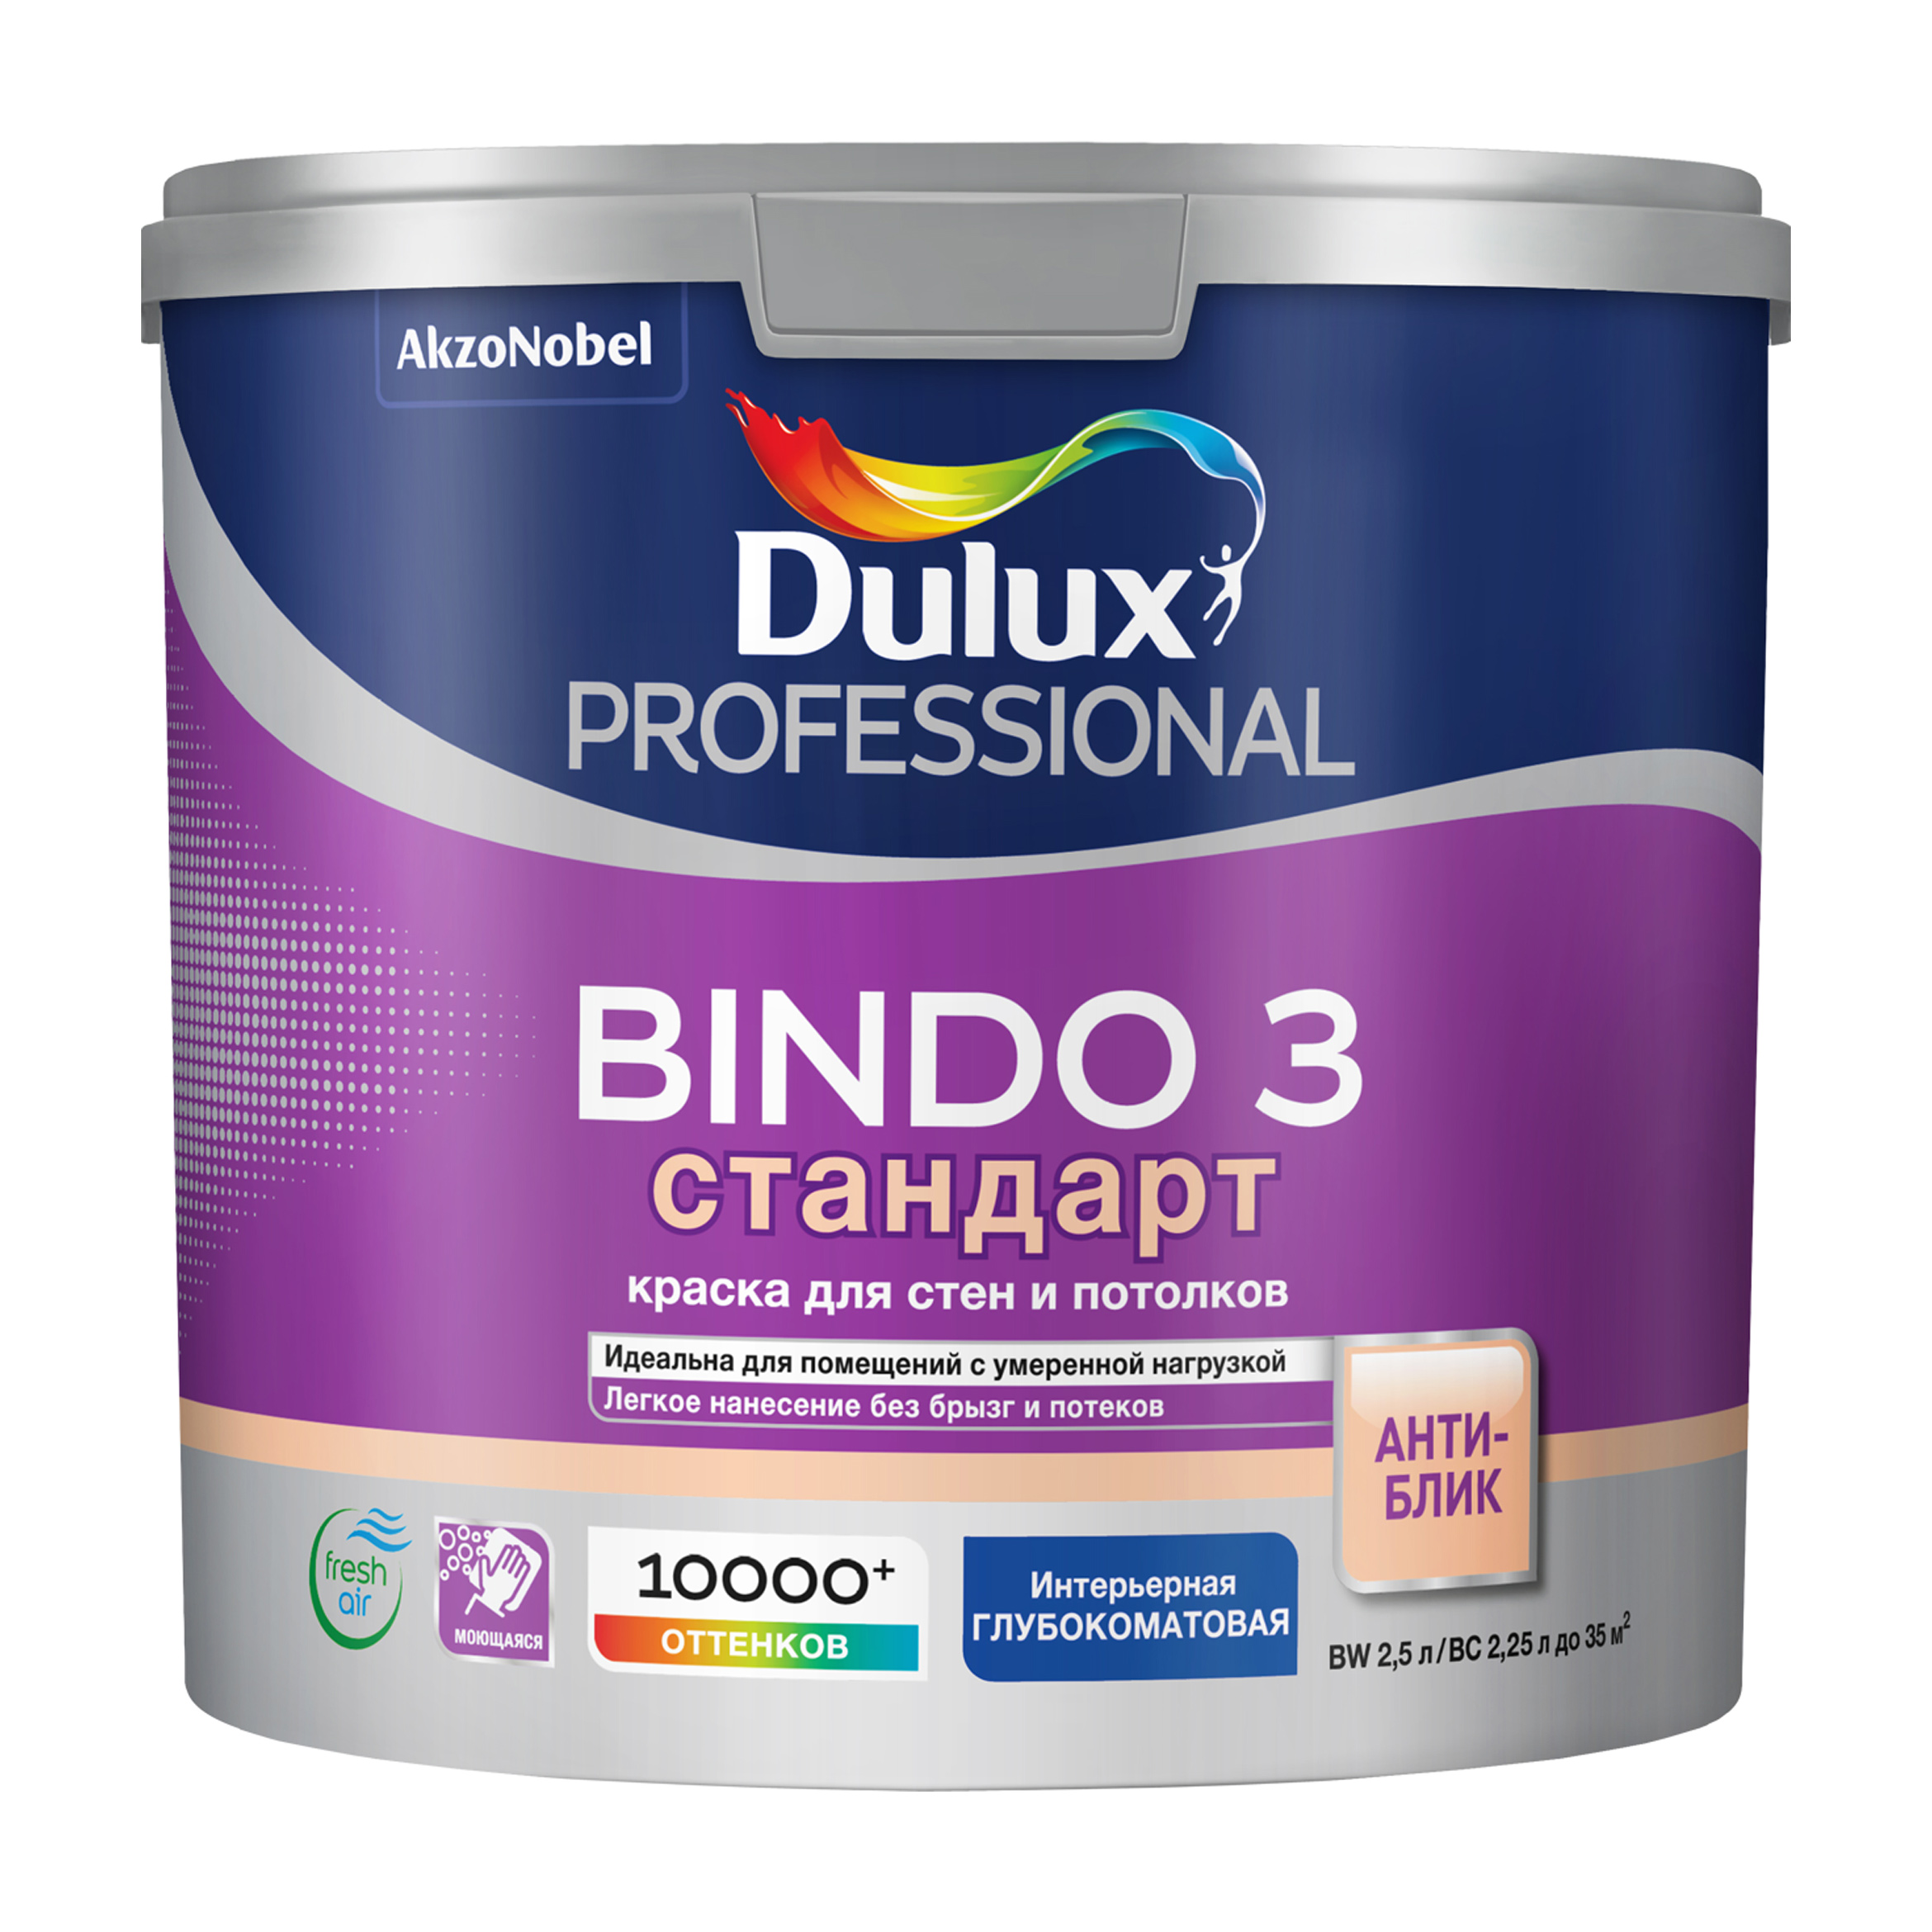 фото Краска для стен и потолков латексная dulux professional bindo 3 глубокоматовая база bw 2,5 л.